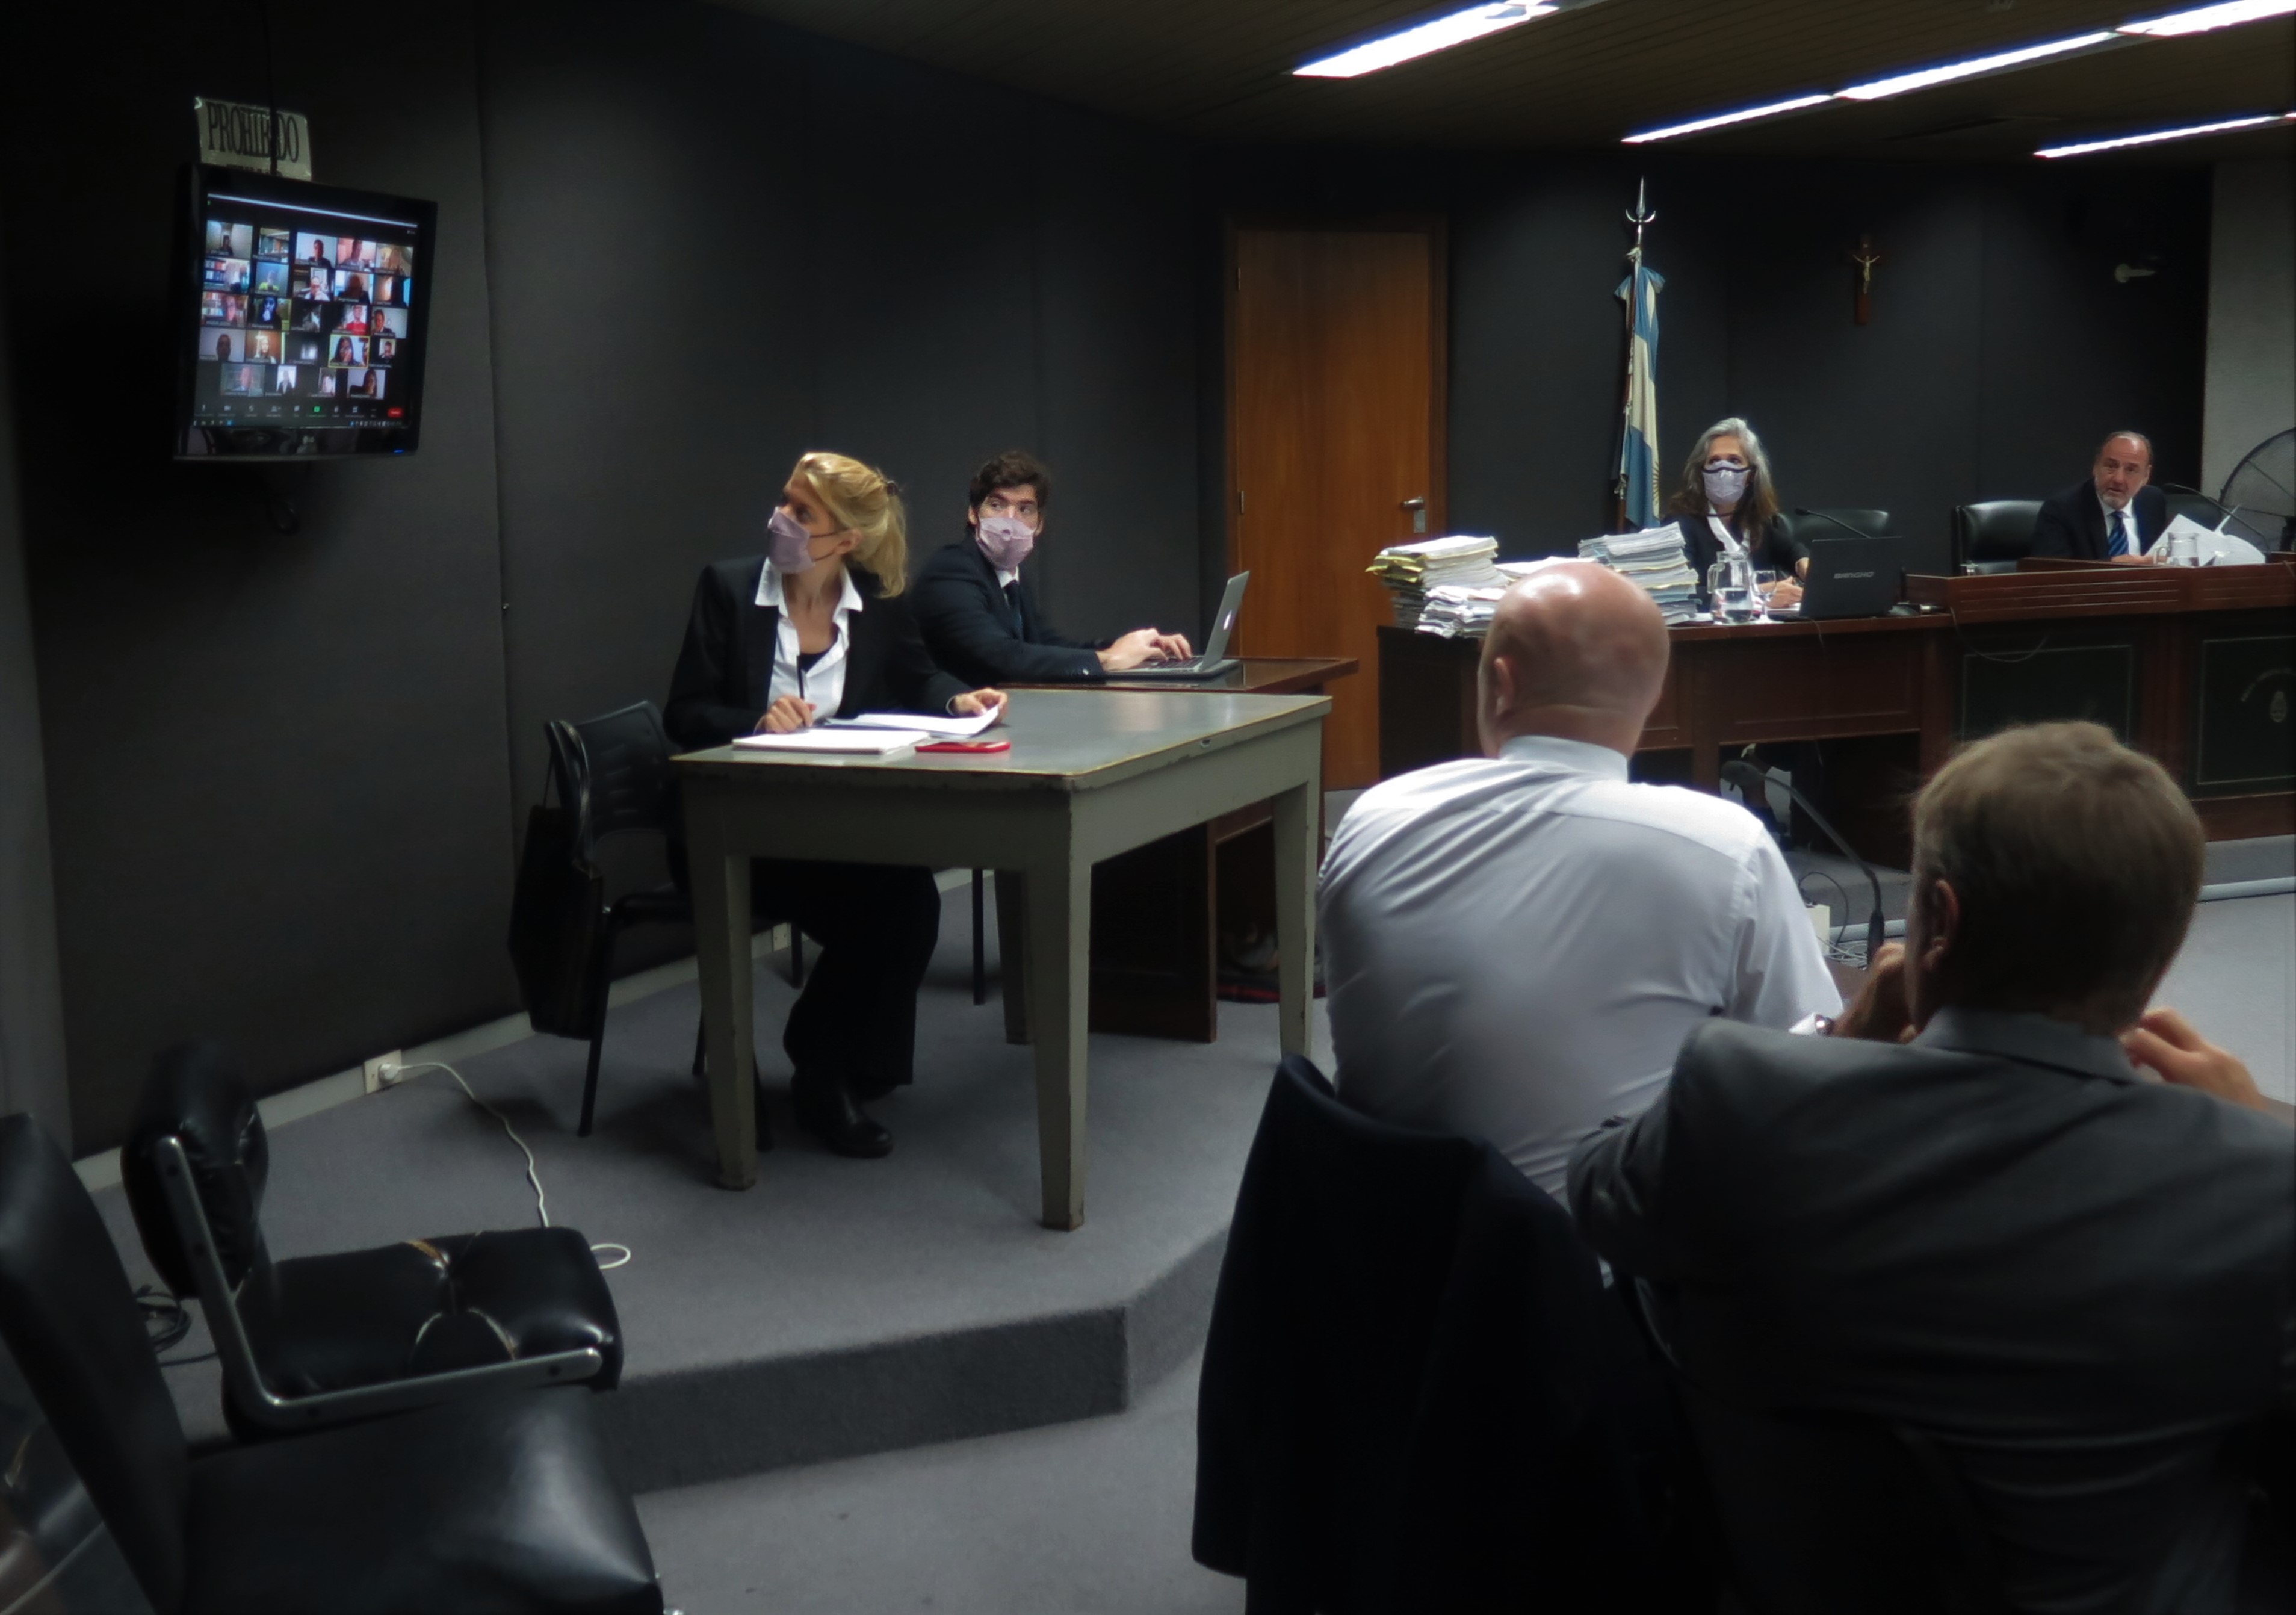 Algunas partes y dos jueces del tribunal participaron de la audiencia por medios remotos.  - Fotos: Belén Cano/Ministerio Público Fiscal de la Nación.